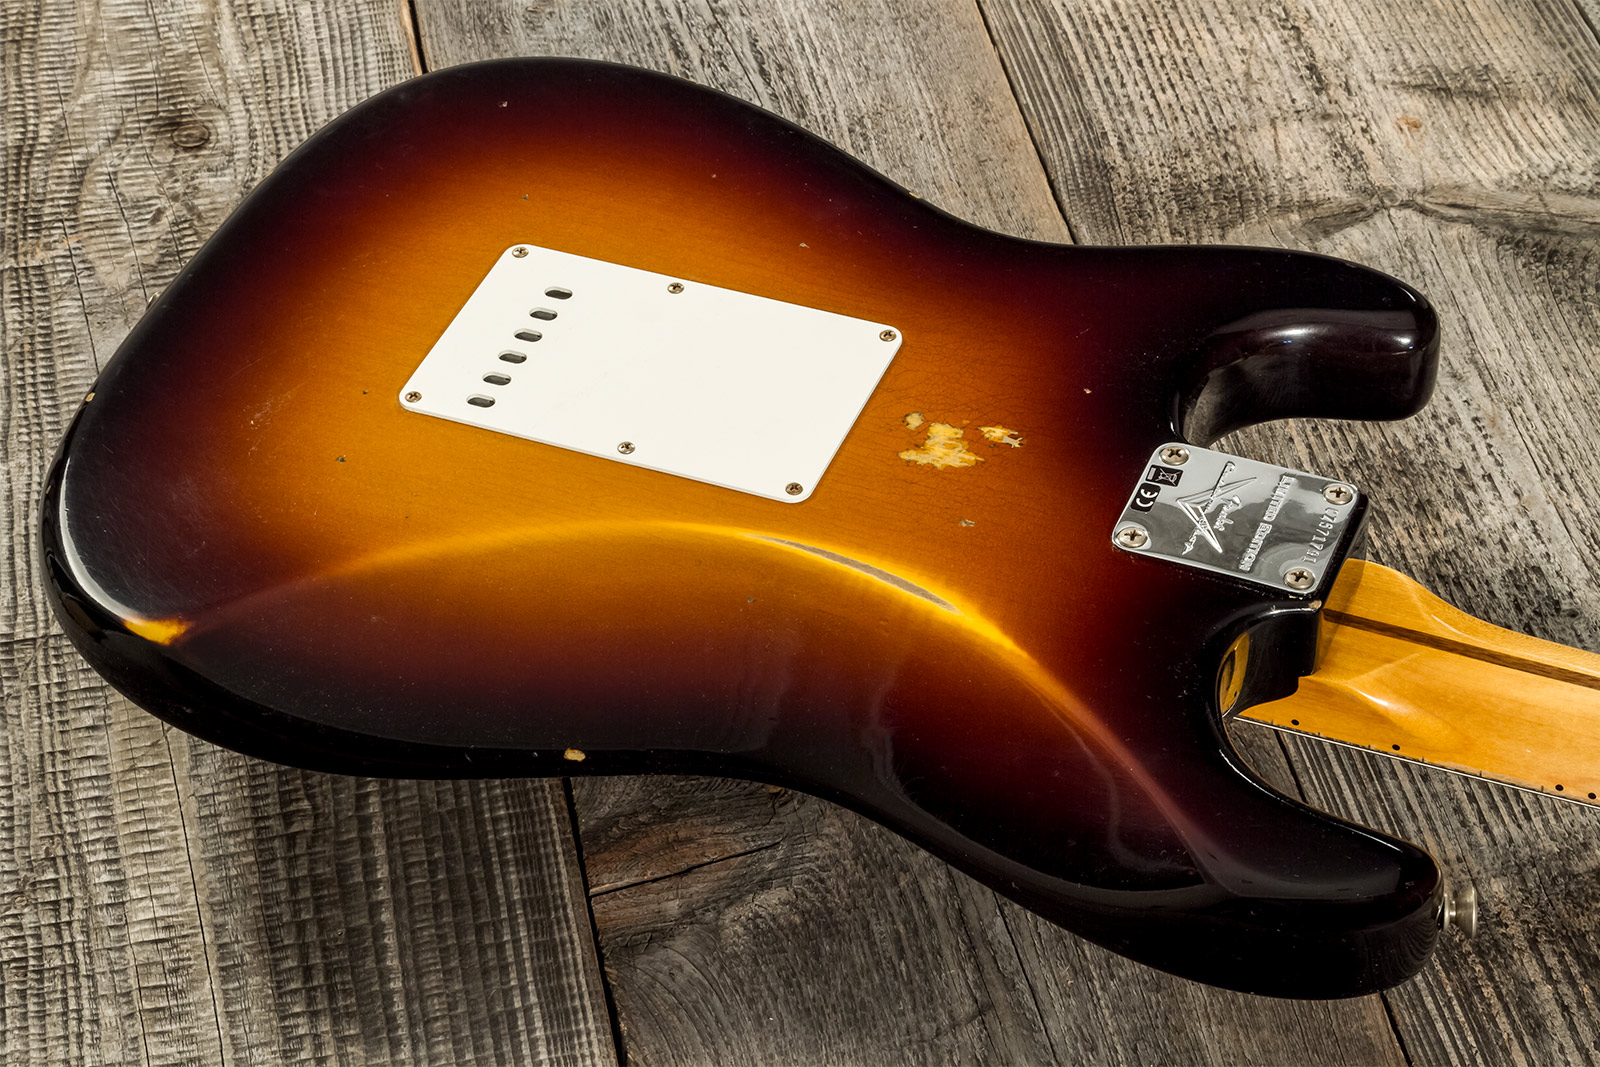 Fender Custom Shop Strat 1957 3s Trem Mn #cz571791 - Relic Wide Fade 2-color Sunburst - E-Gitarre in Str-Form - Variation 6